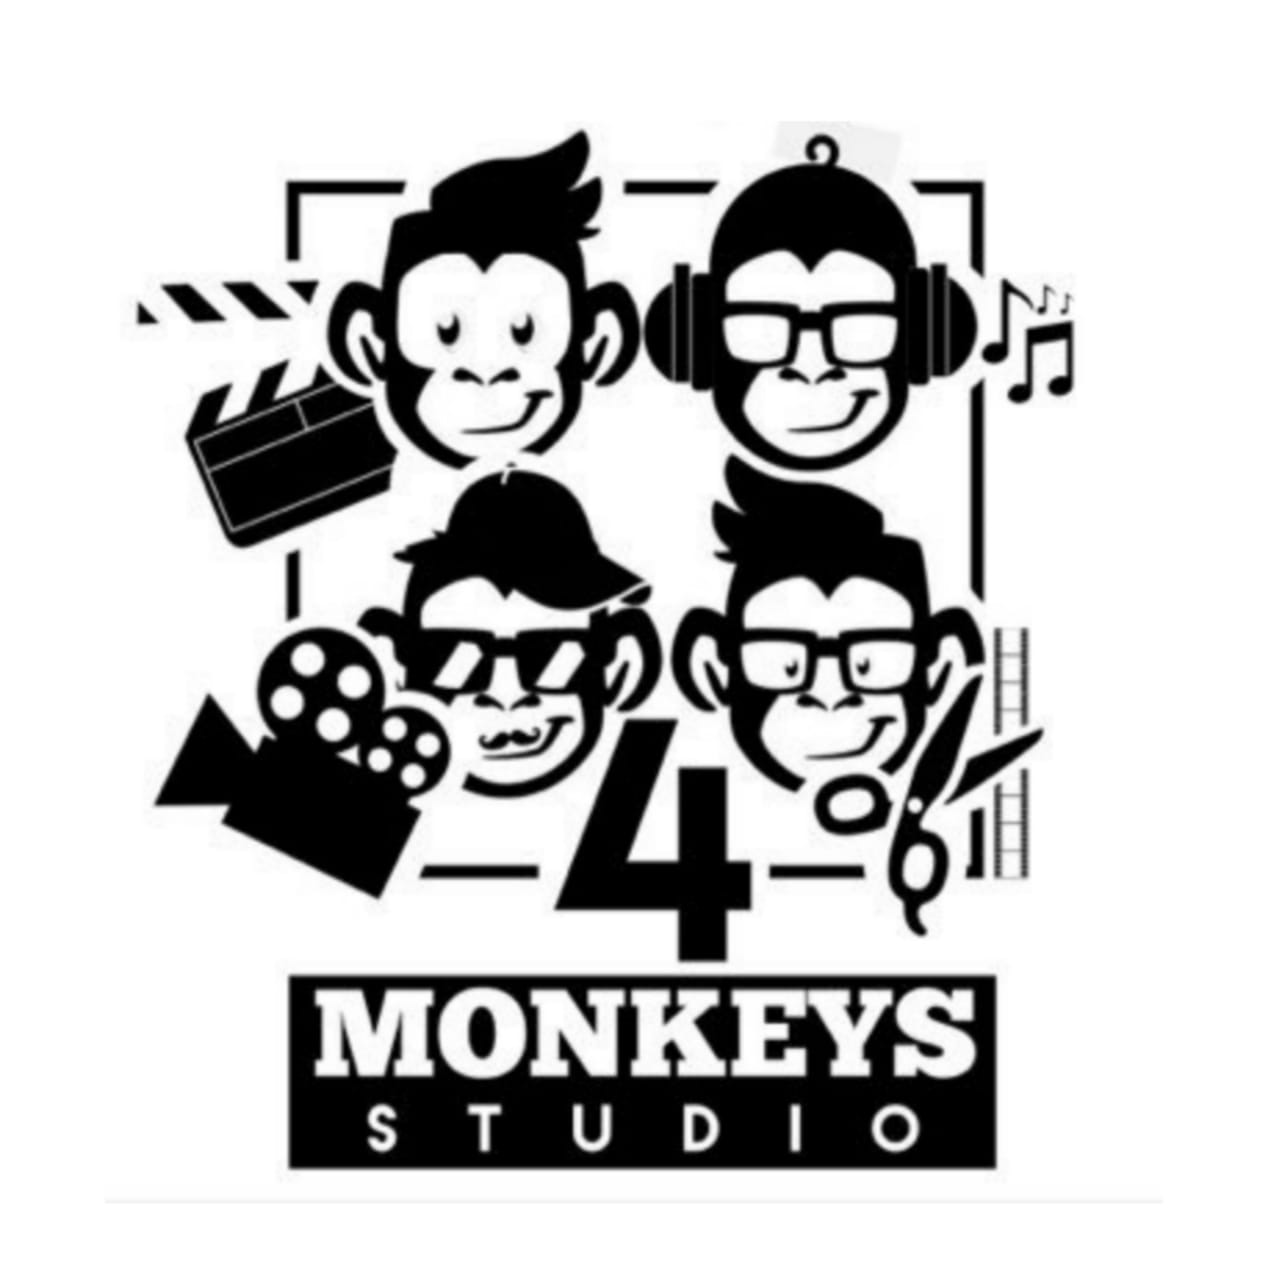 4 Monkeys Studios